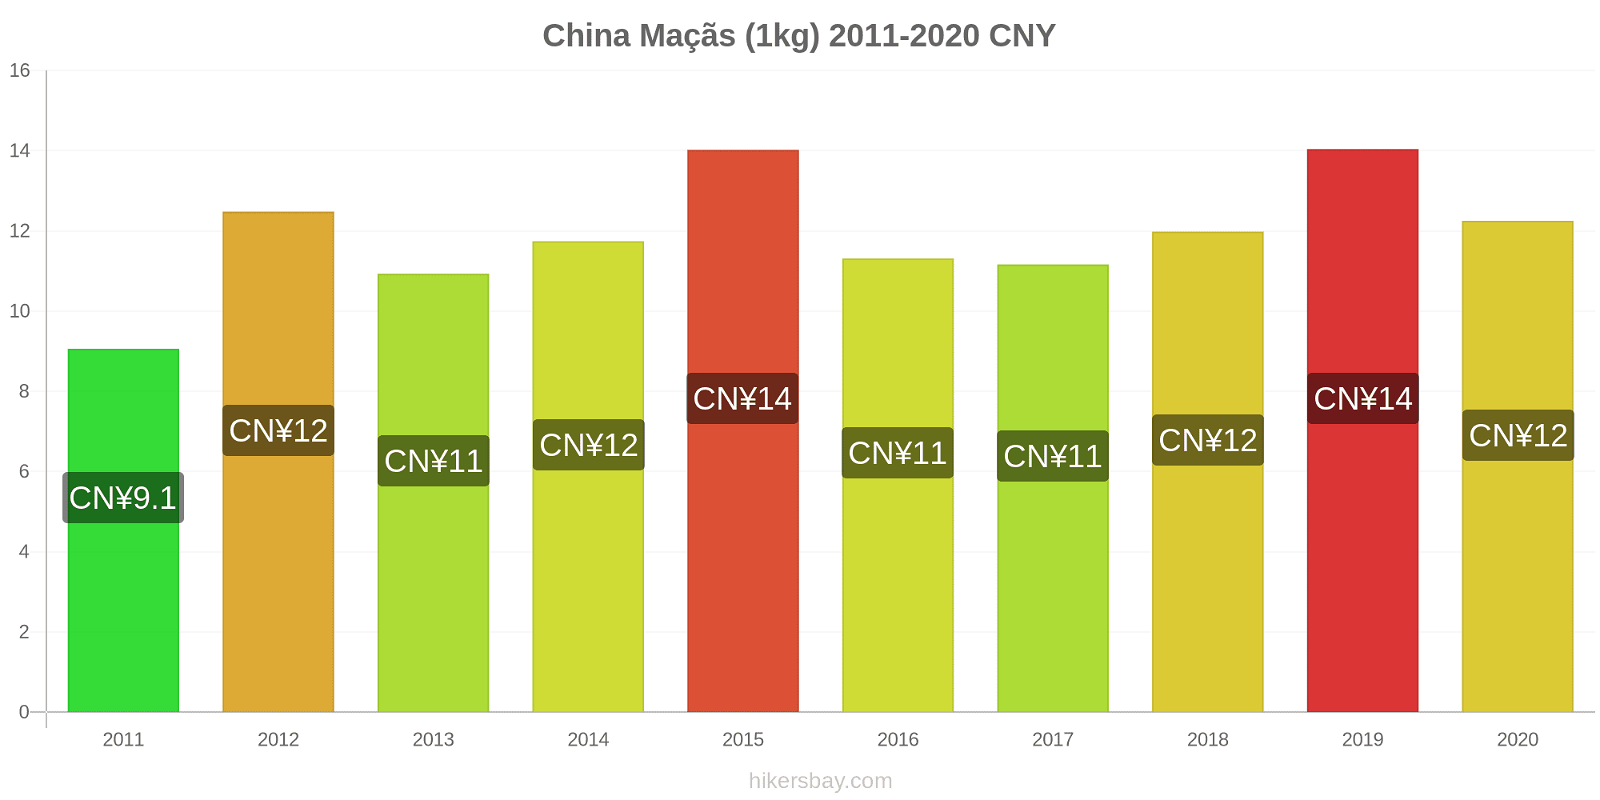 China variação de preço Maçãs (1kg) hikersbay.com